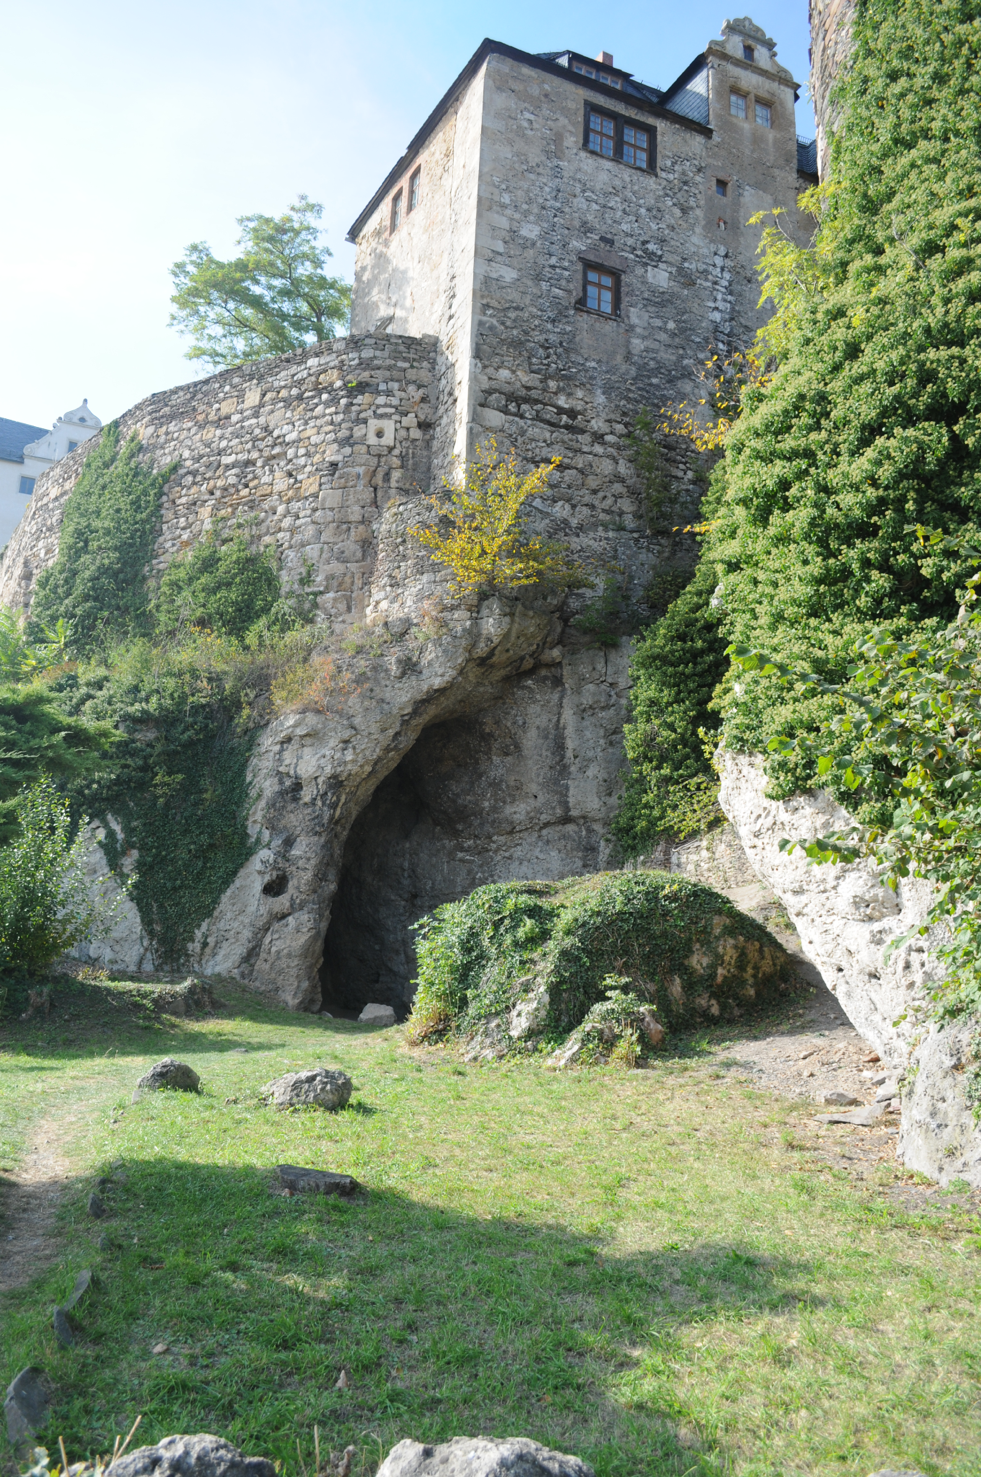 Die Ilsenhöhle befindet sich unterhalb der Burg Ranis in der gleichnamigen Stadt in Thüringen. Archäologen entdeckten dort die Spuren eines altsteinzeitlichen Lagerplatzes.